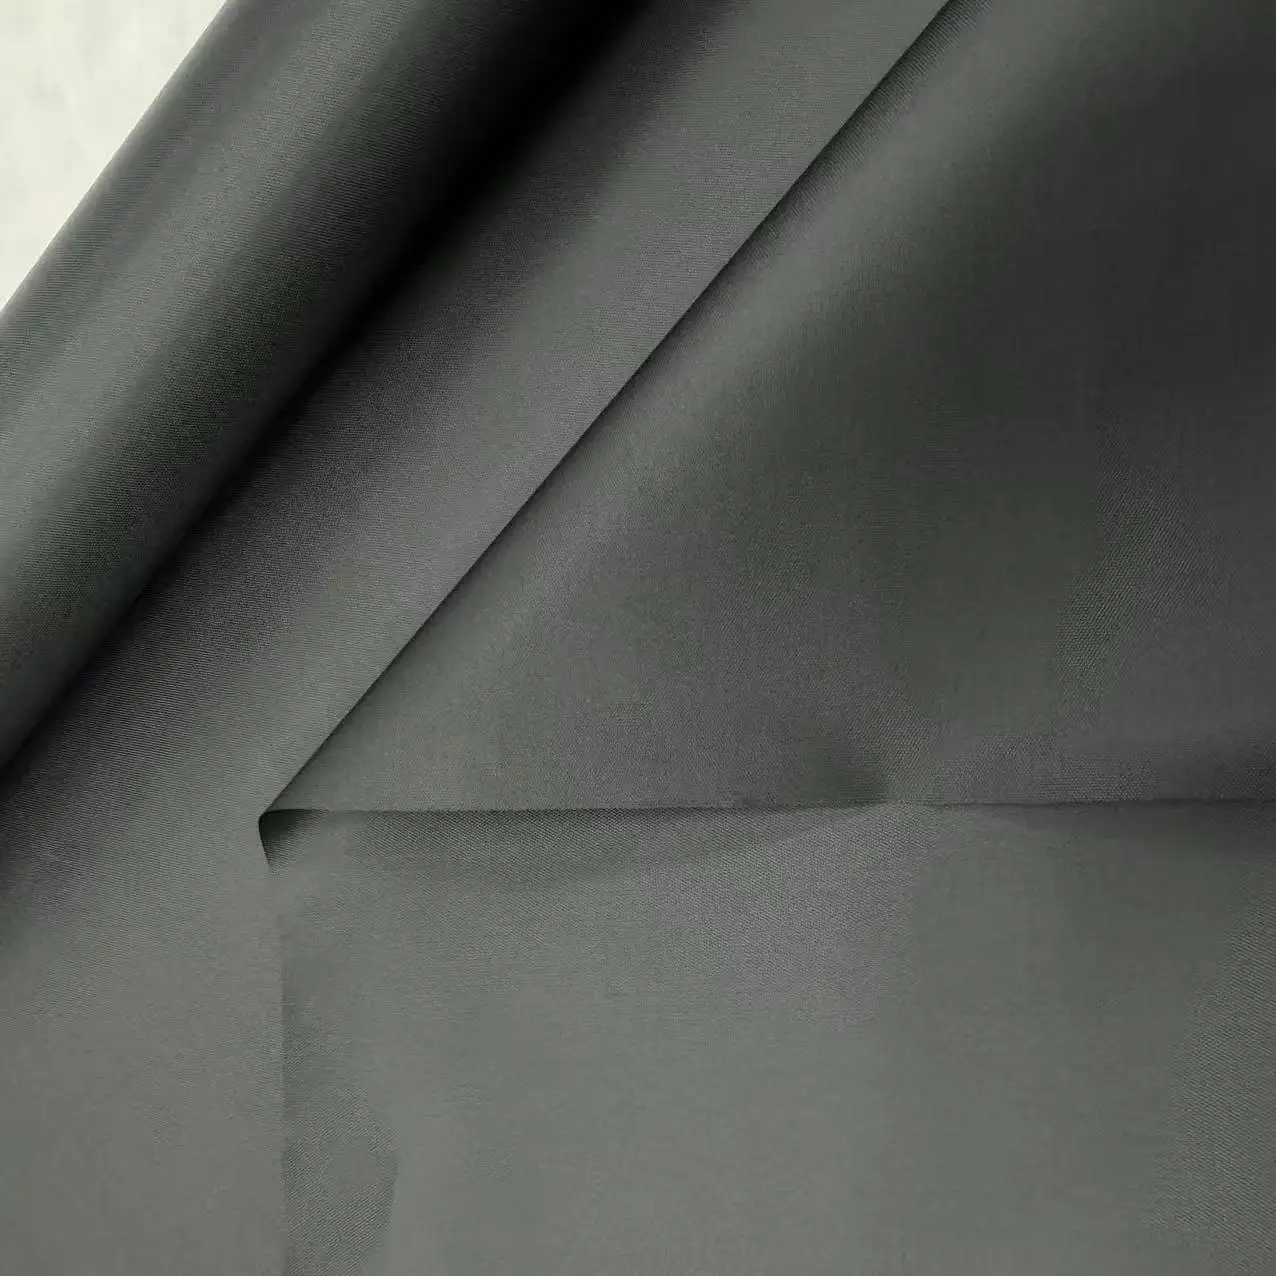 Fabriek 210d 100 Polyester Stof Met Pa Coating Oxford Tas Materiaal Geweven Stof